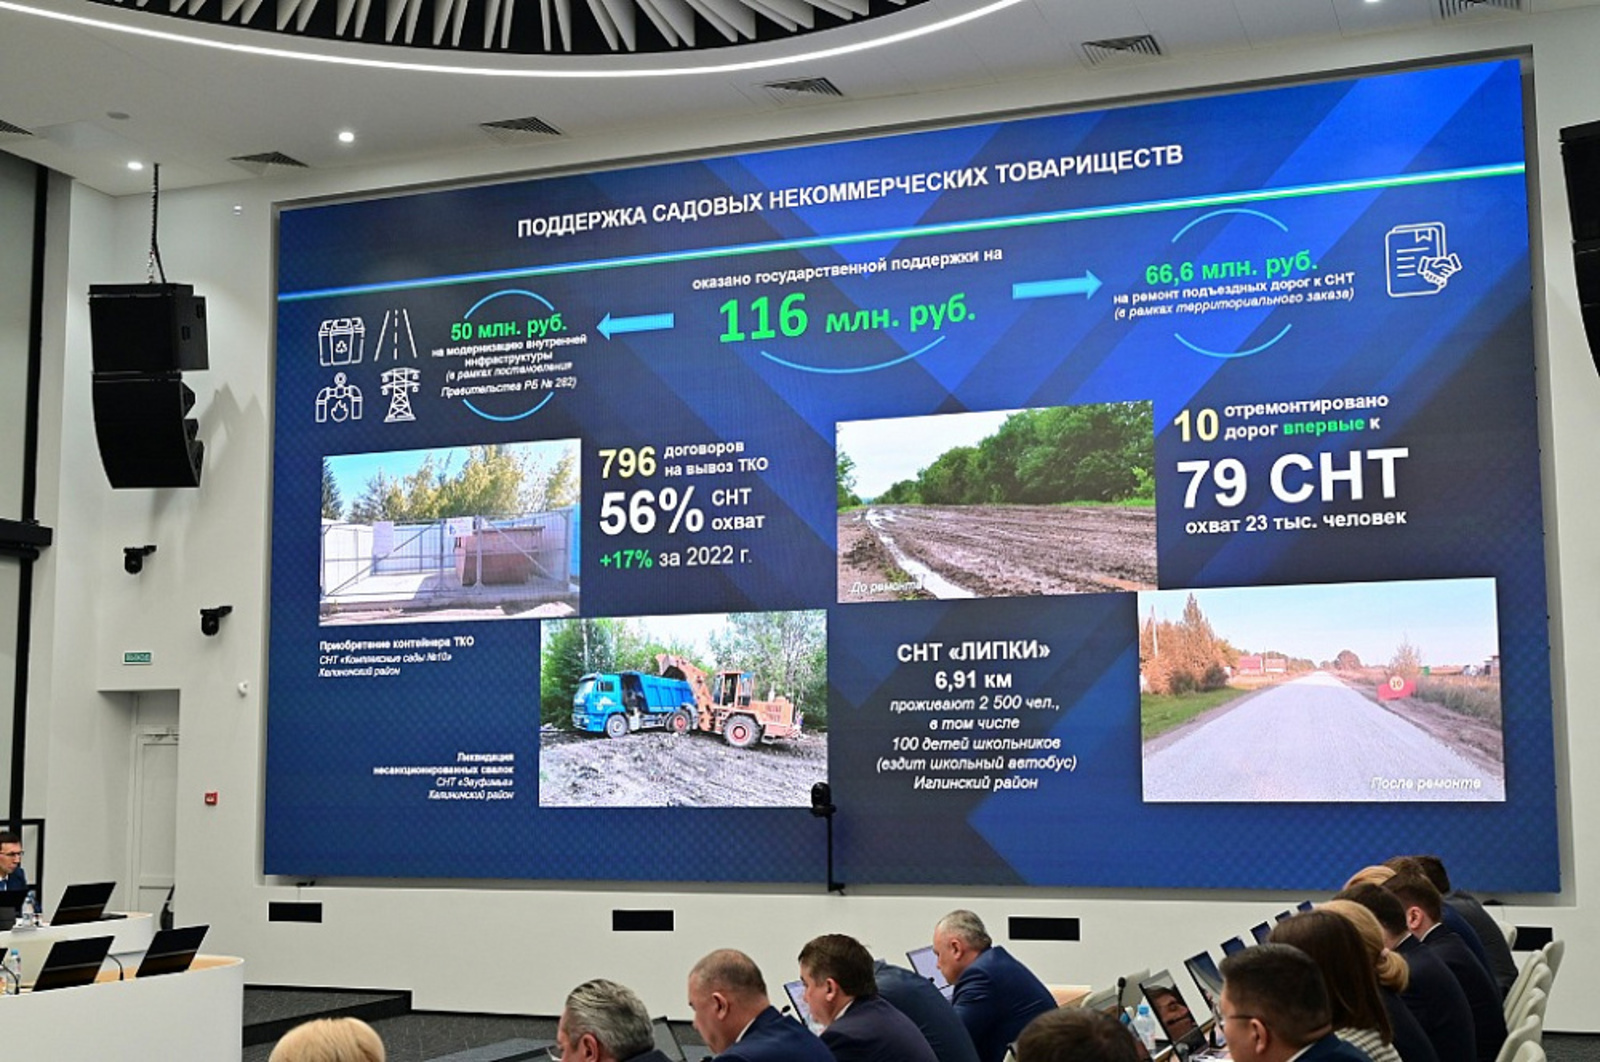 В Башкортостане на поддержку садовых товариществ выделили 116 млн рублей